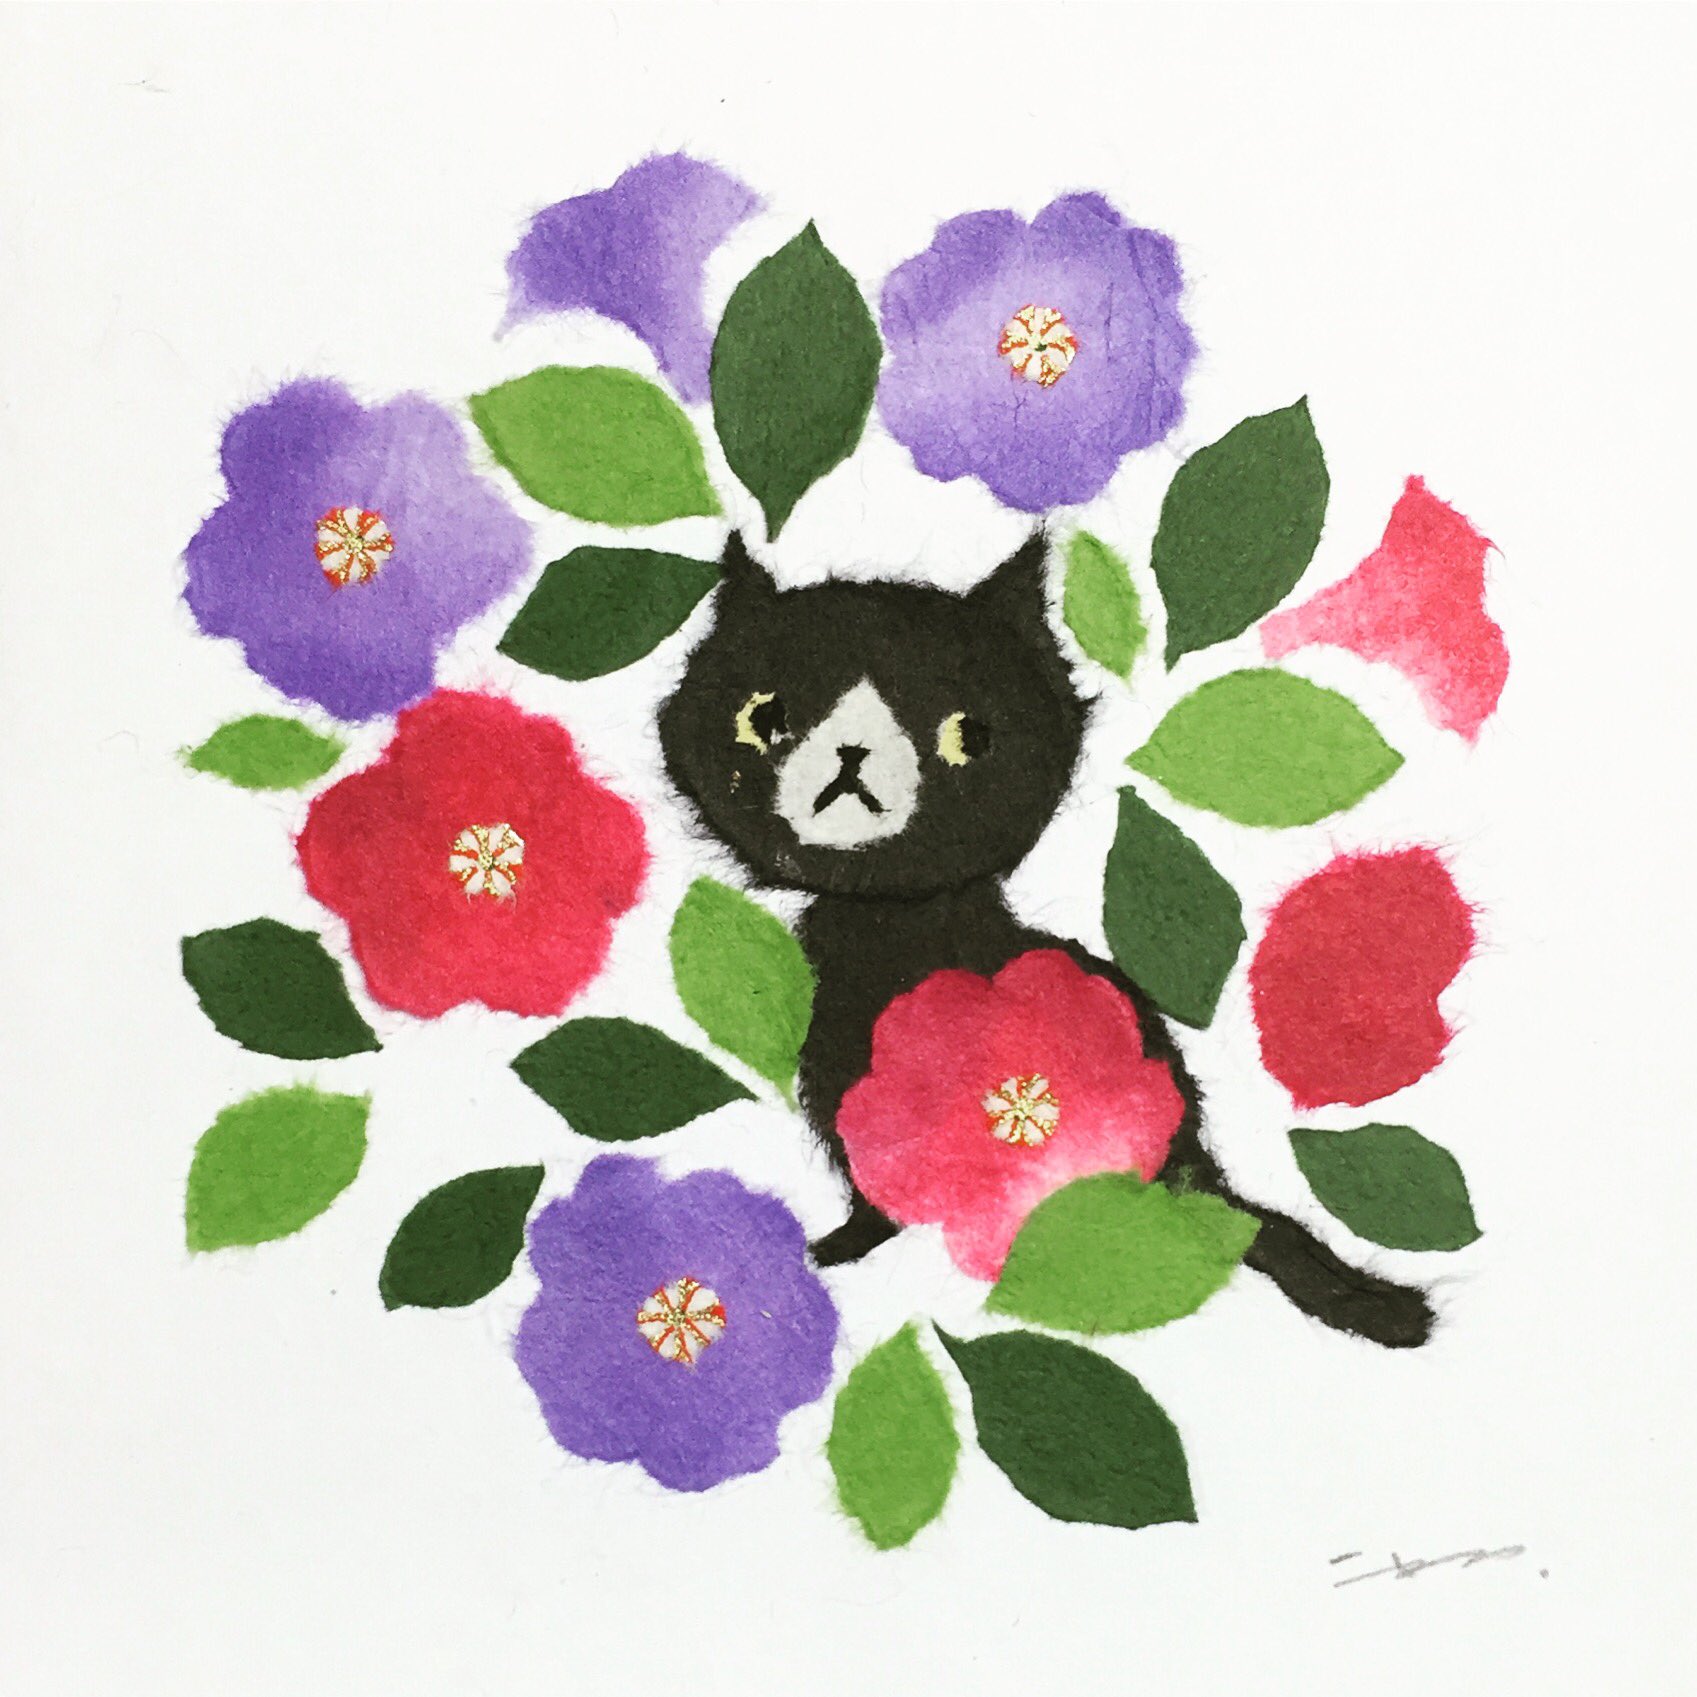 ウメチギリ 4月はじまりカレンダー原画展開催中 9月25日今日の誕生花はペチュニア 花言葉は あなたと一緒なら心がやわらぐ 心のやすらぎ あぁ ネコを抱きたい季節です ちぎり絵 ウメチギリ ひとふでちぎり 和紙 Washi Chigirie Paperart